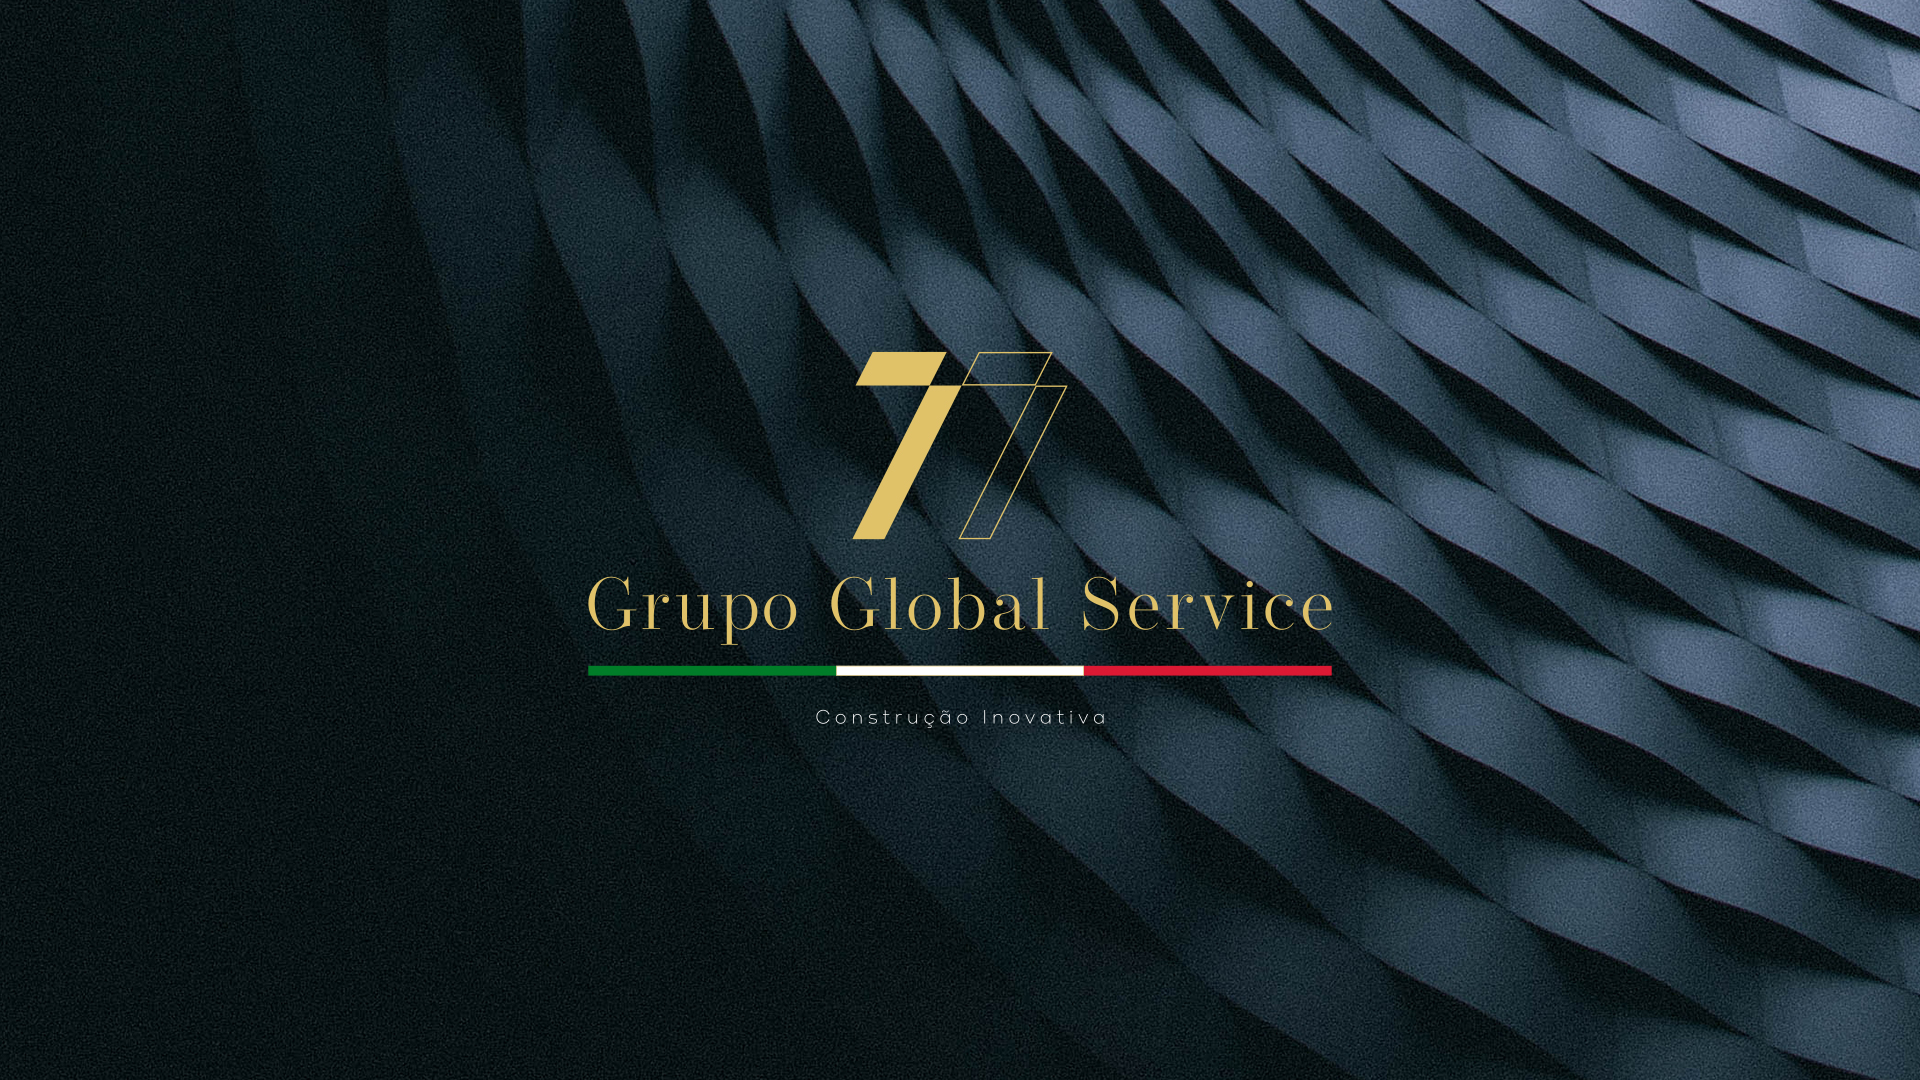 Grupo 77 Global Services criação de Logotipo